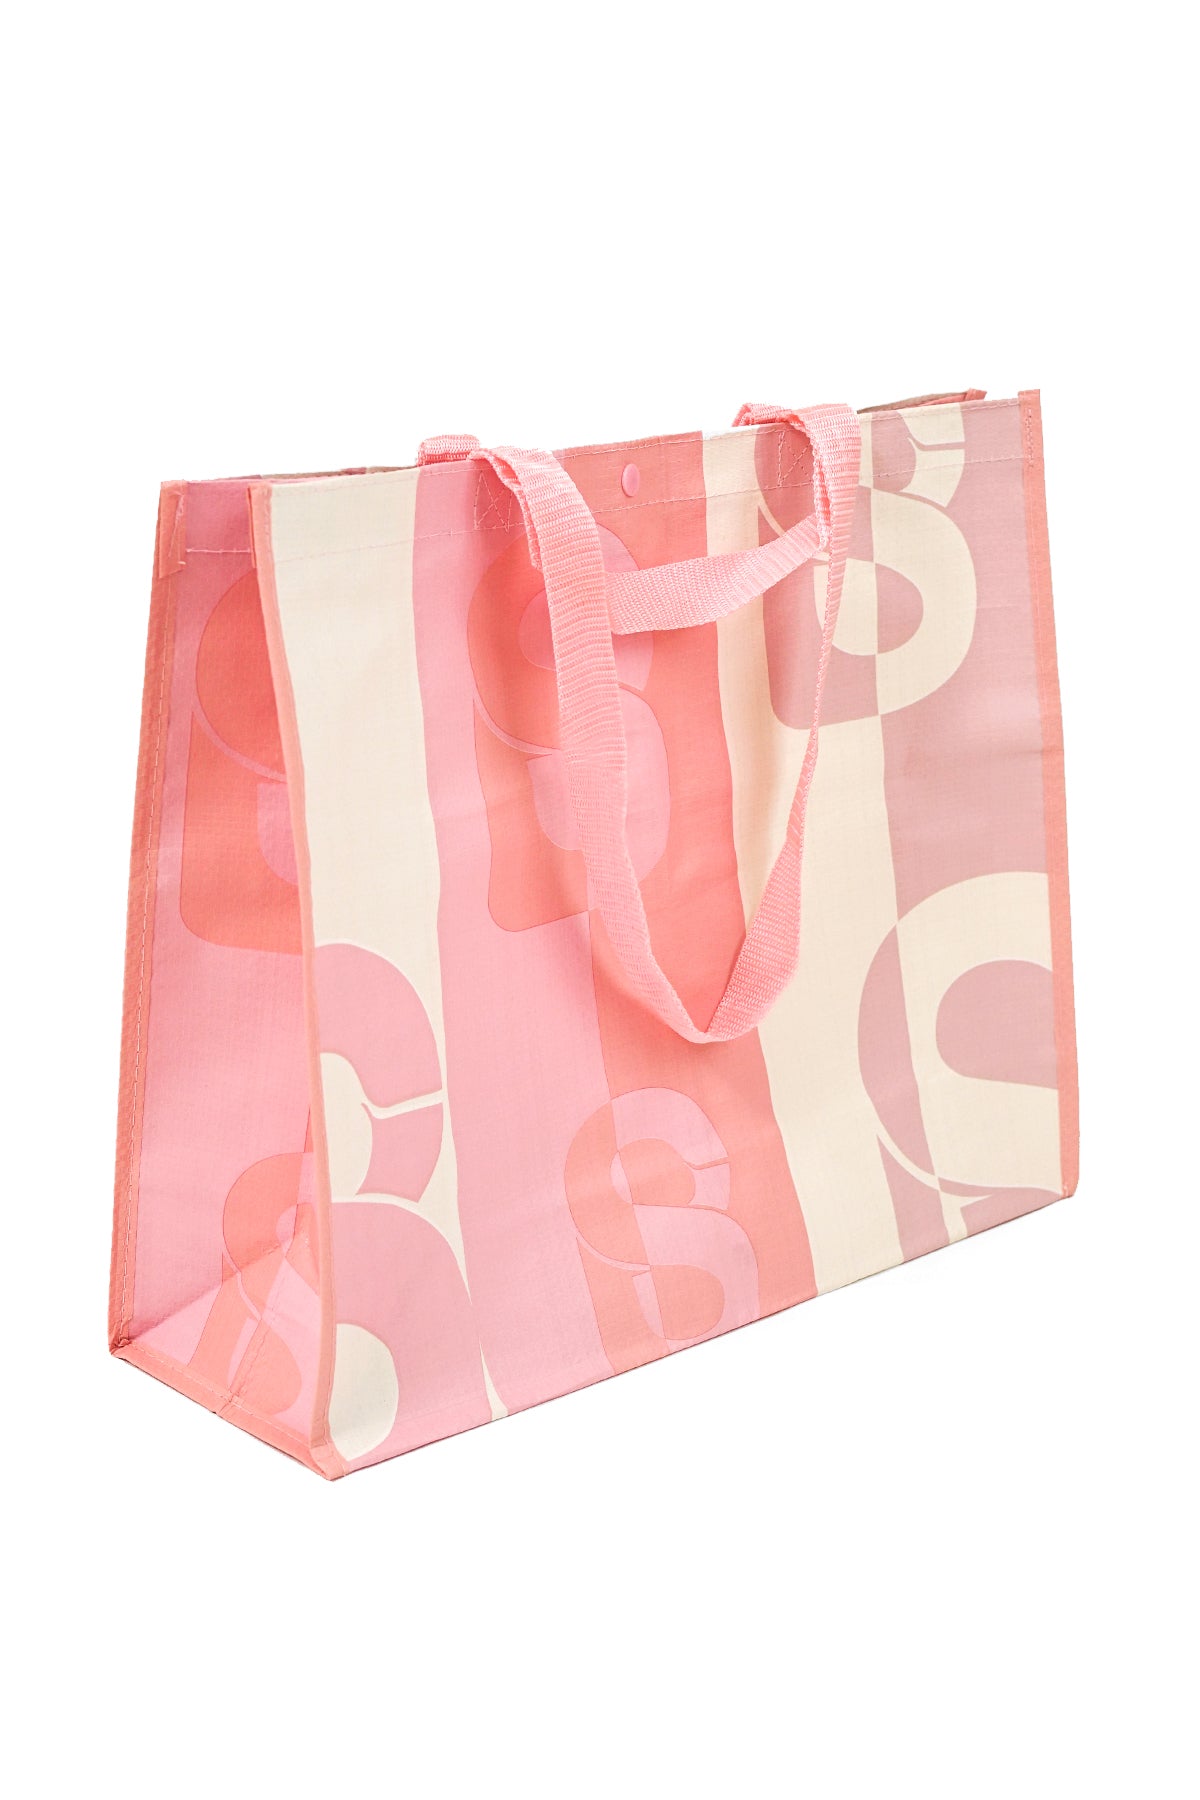 Everyday Shopping Bag - Strawberry Milkshake